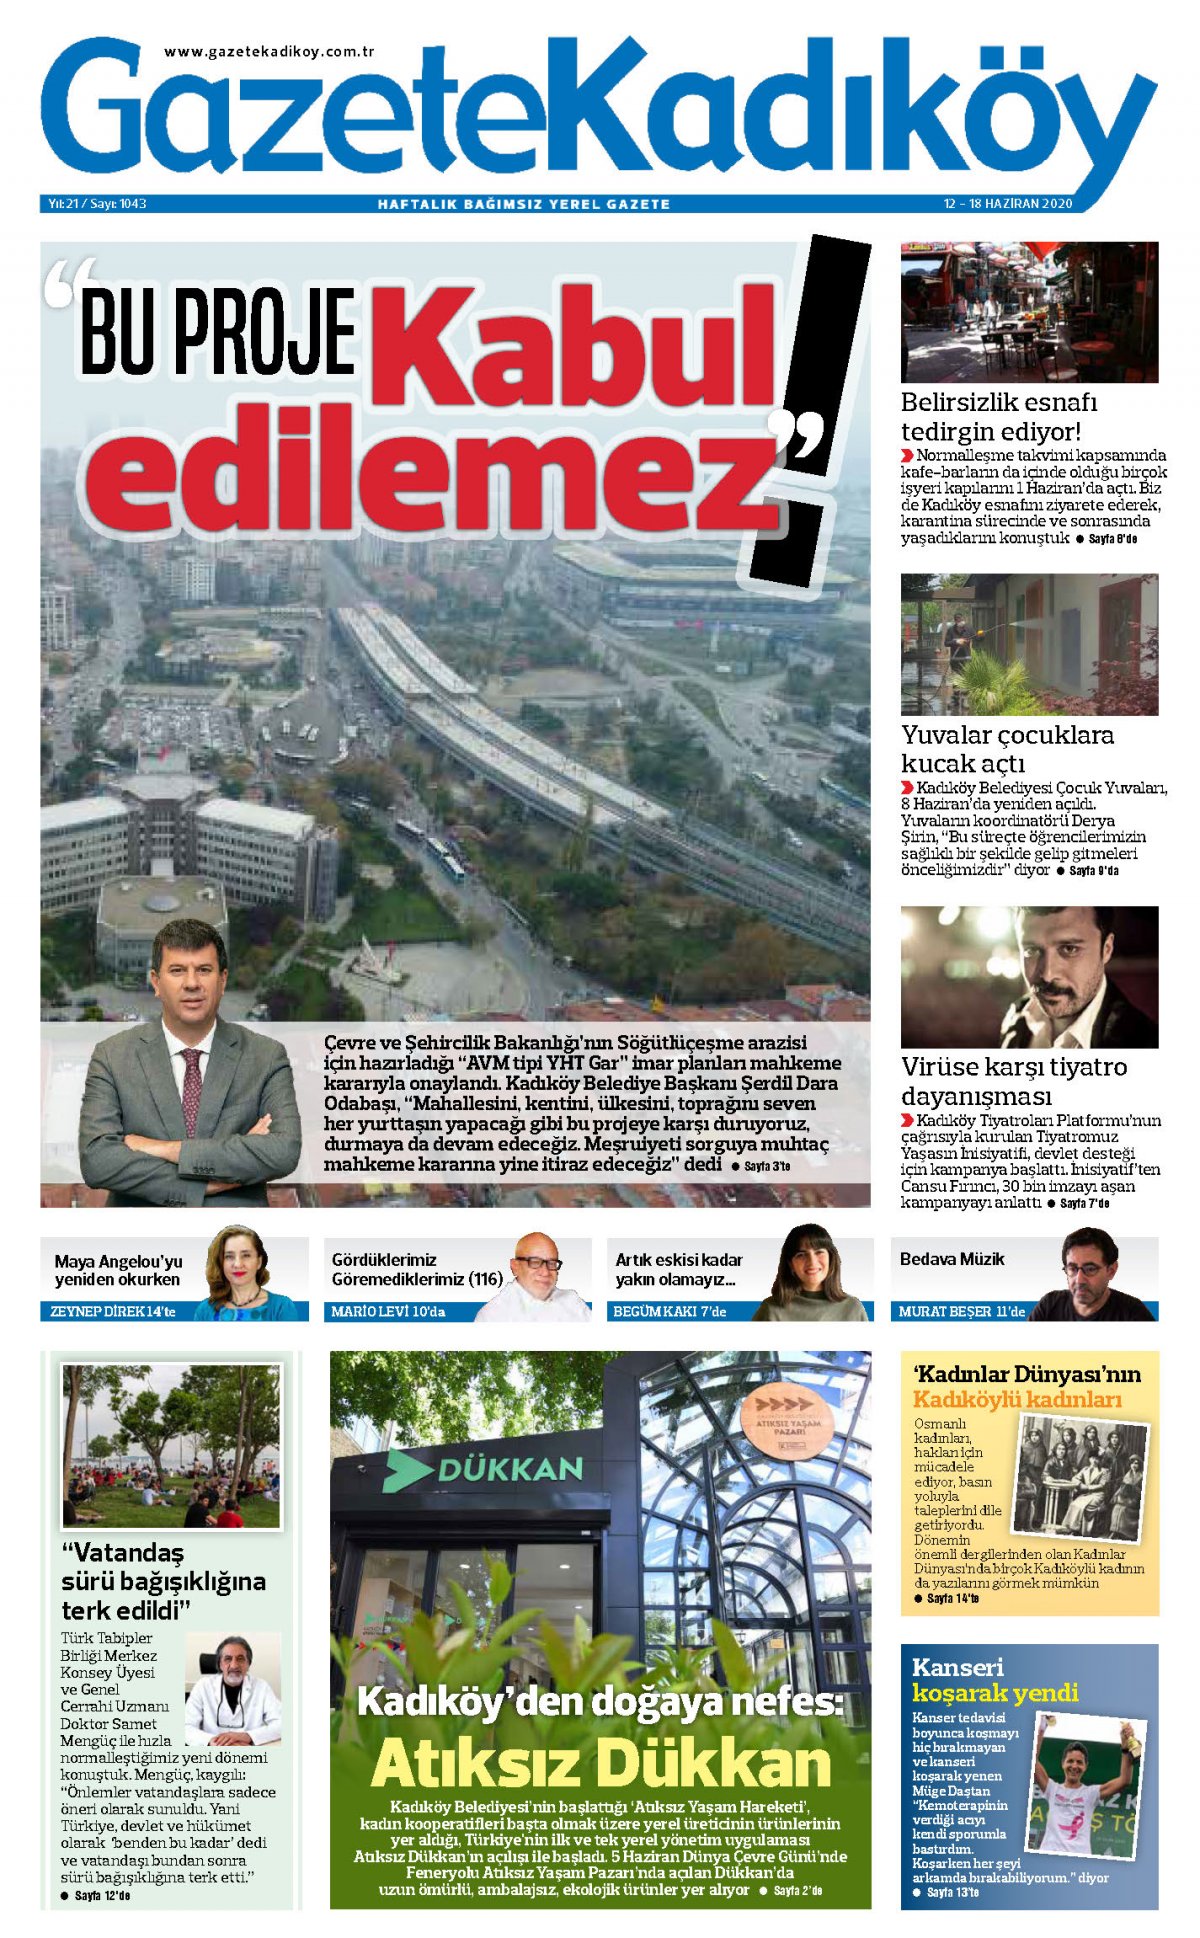 Gazete Kadıköy - 1043. Sayı